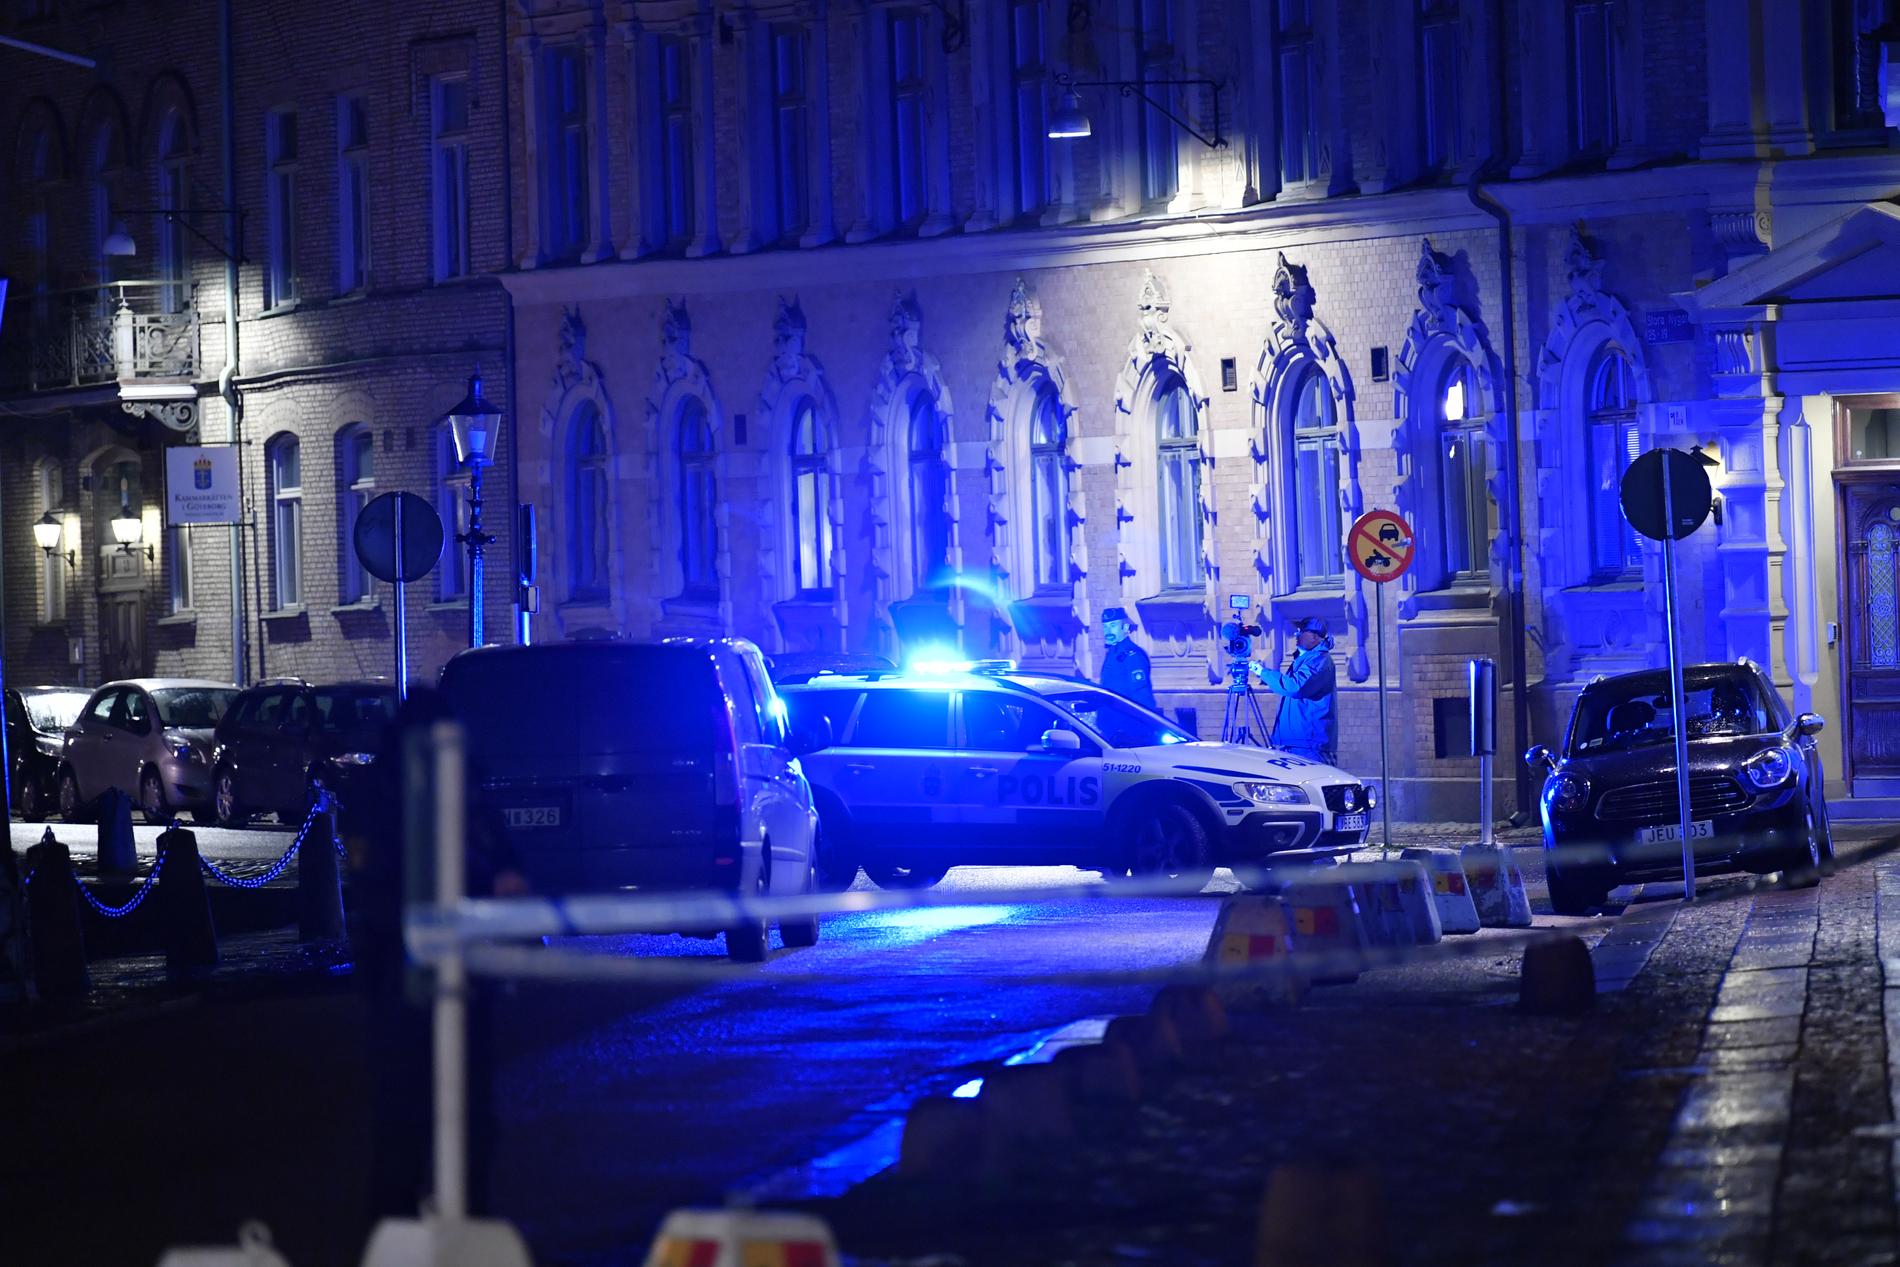 På tisdagen startade rättegången efter brandattacken mot synagogan i Göteborg. Tre unga män, varav två palestinska medborgare, står åtalade för grov mordbrand. Enligt åklagaren handlar det om ett hatbrott. Arkivbild.